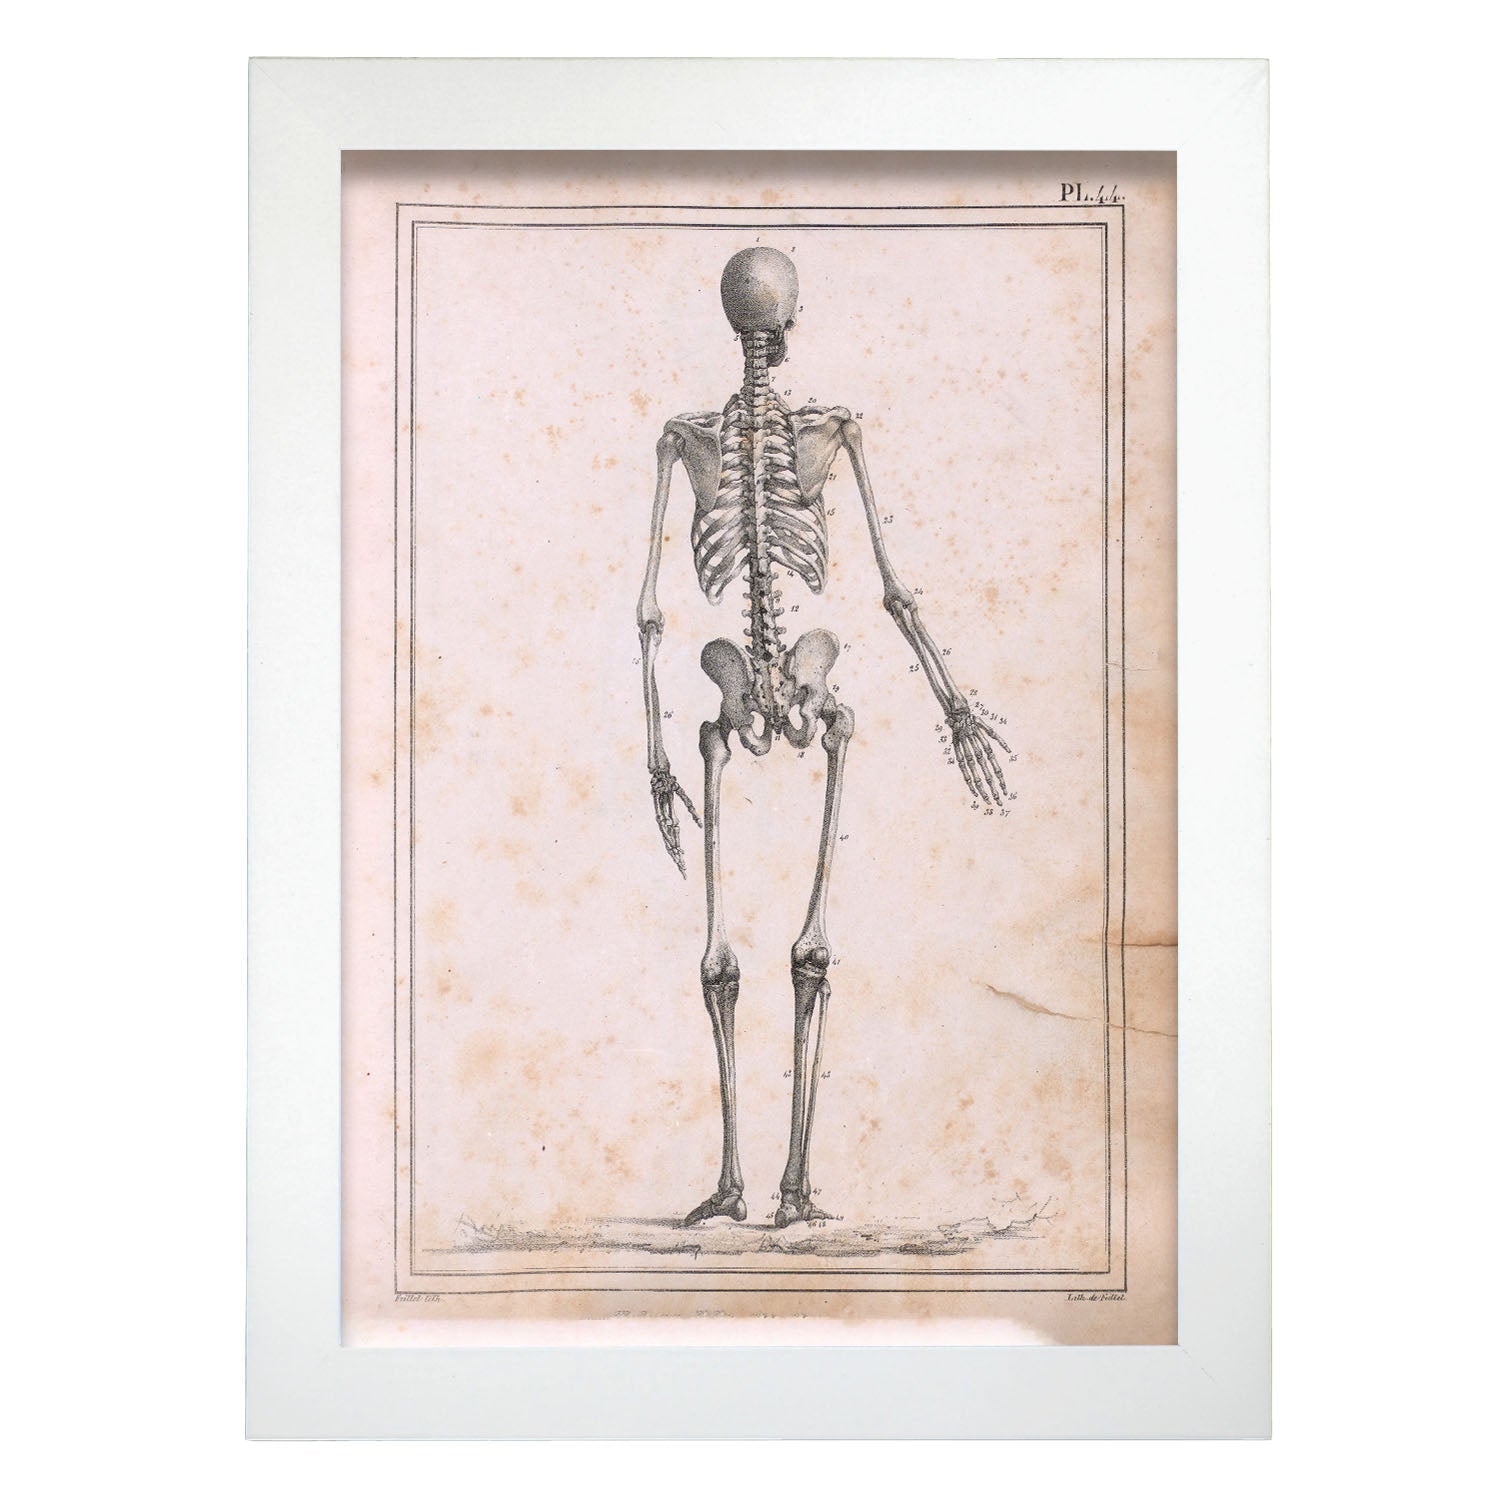 Paillou Skeleton-Artwork-Nacnic-A4-Marco Blanco-Nacnic Estudio SL